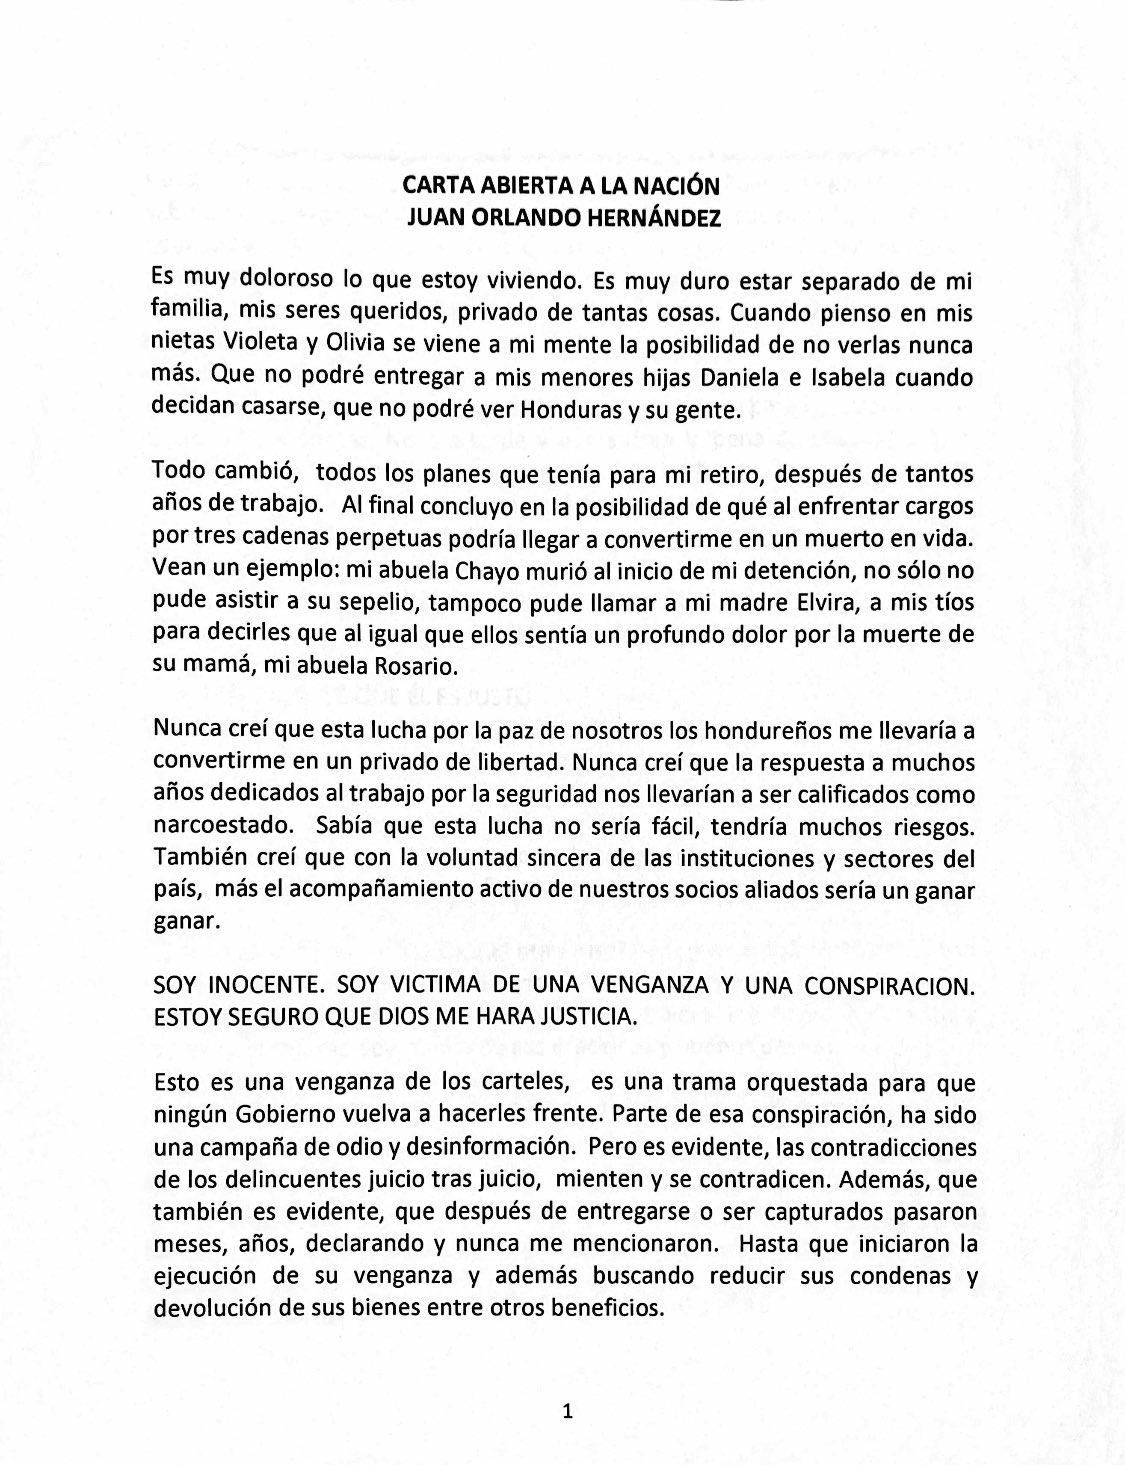 Carta abierta de Juan Orlando Hernández a Honduras: “Podría llegar a convertirme en un muerto en vida”